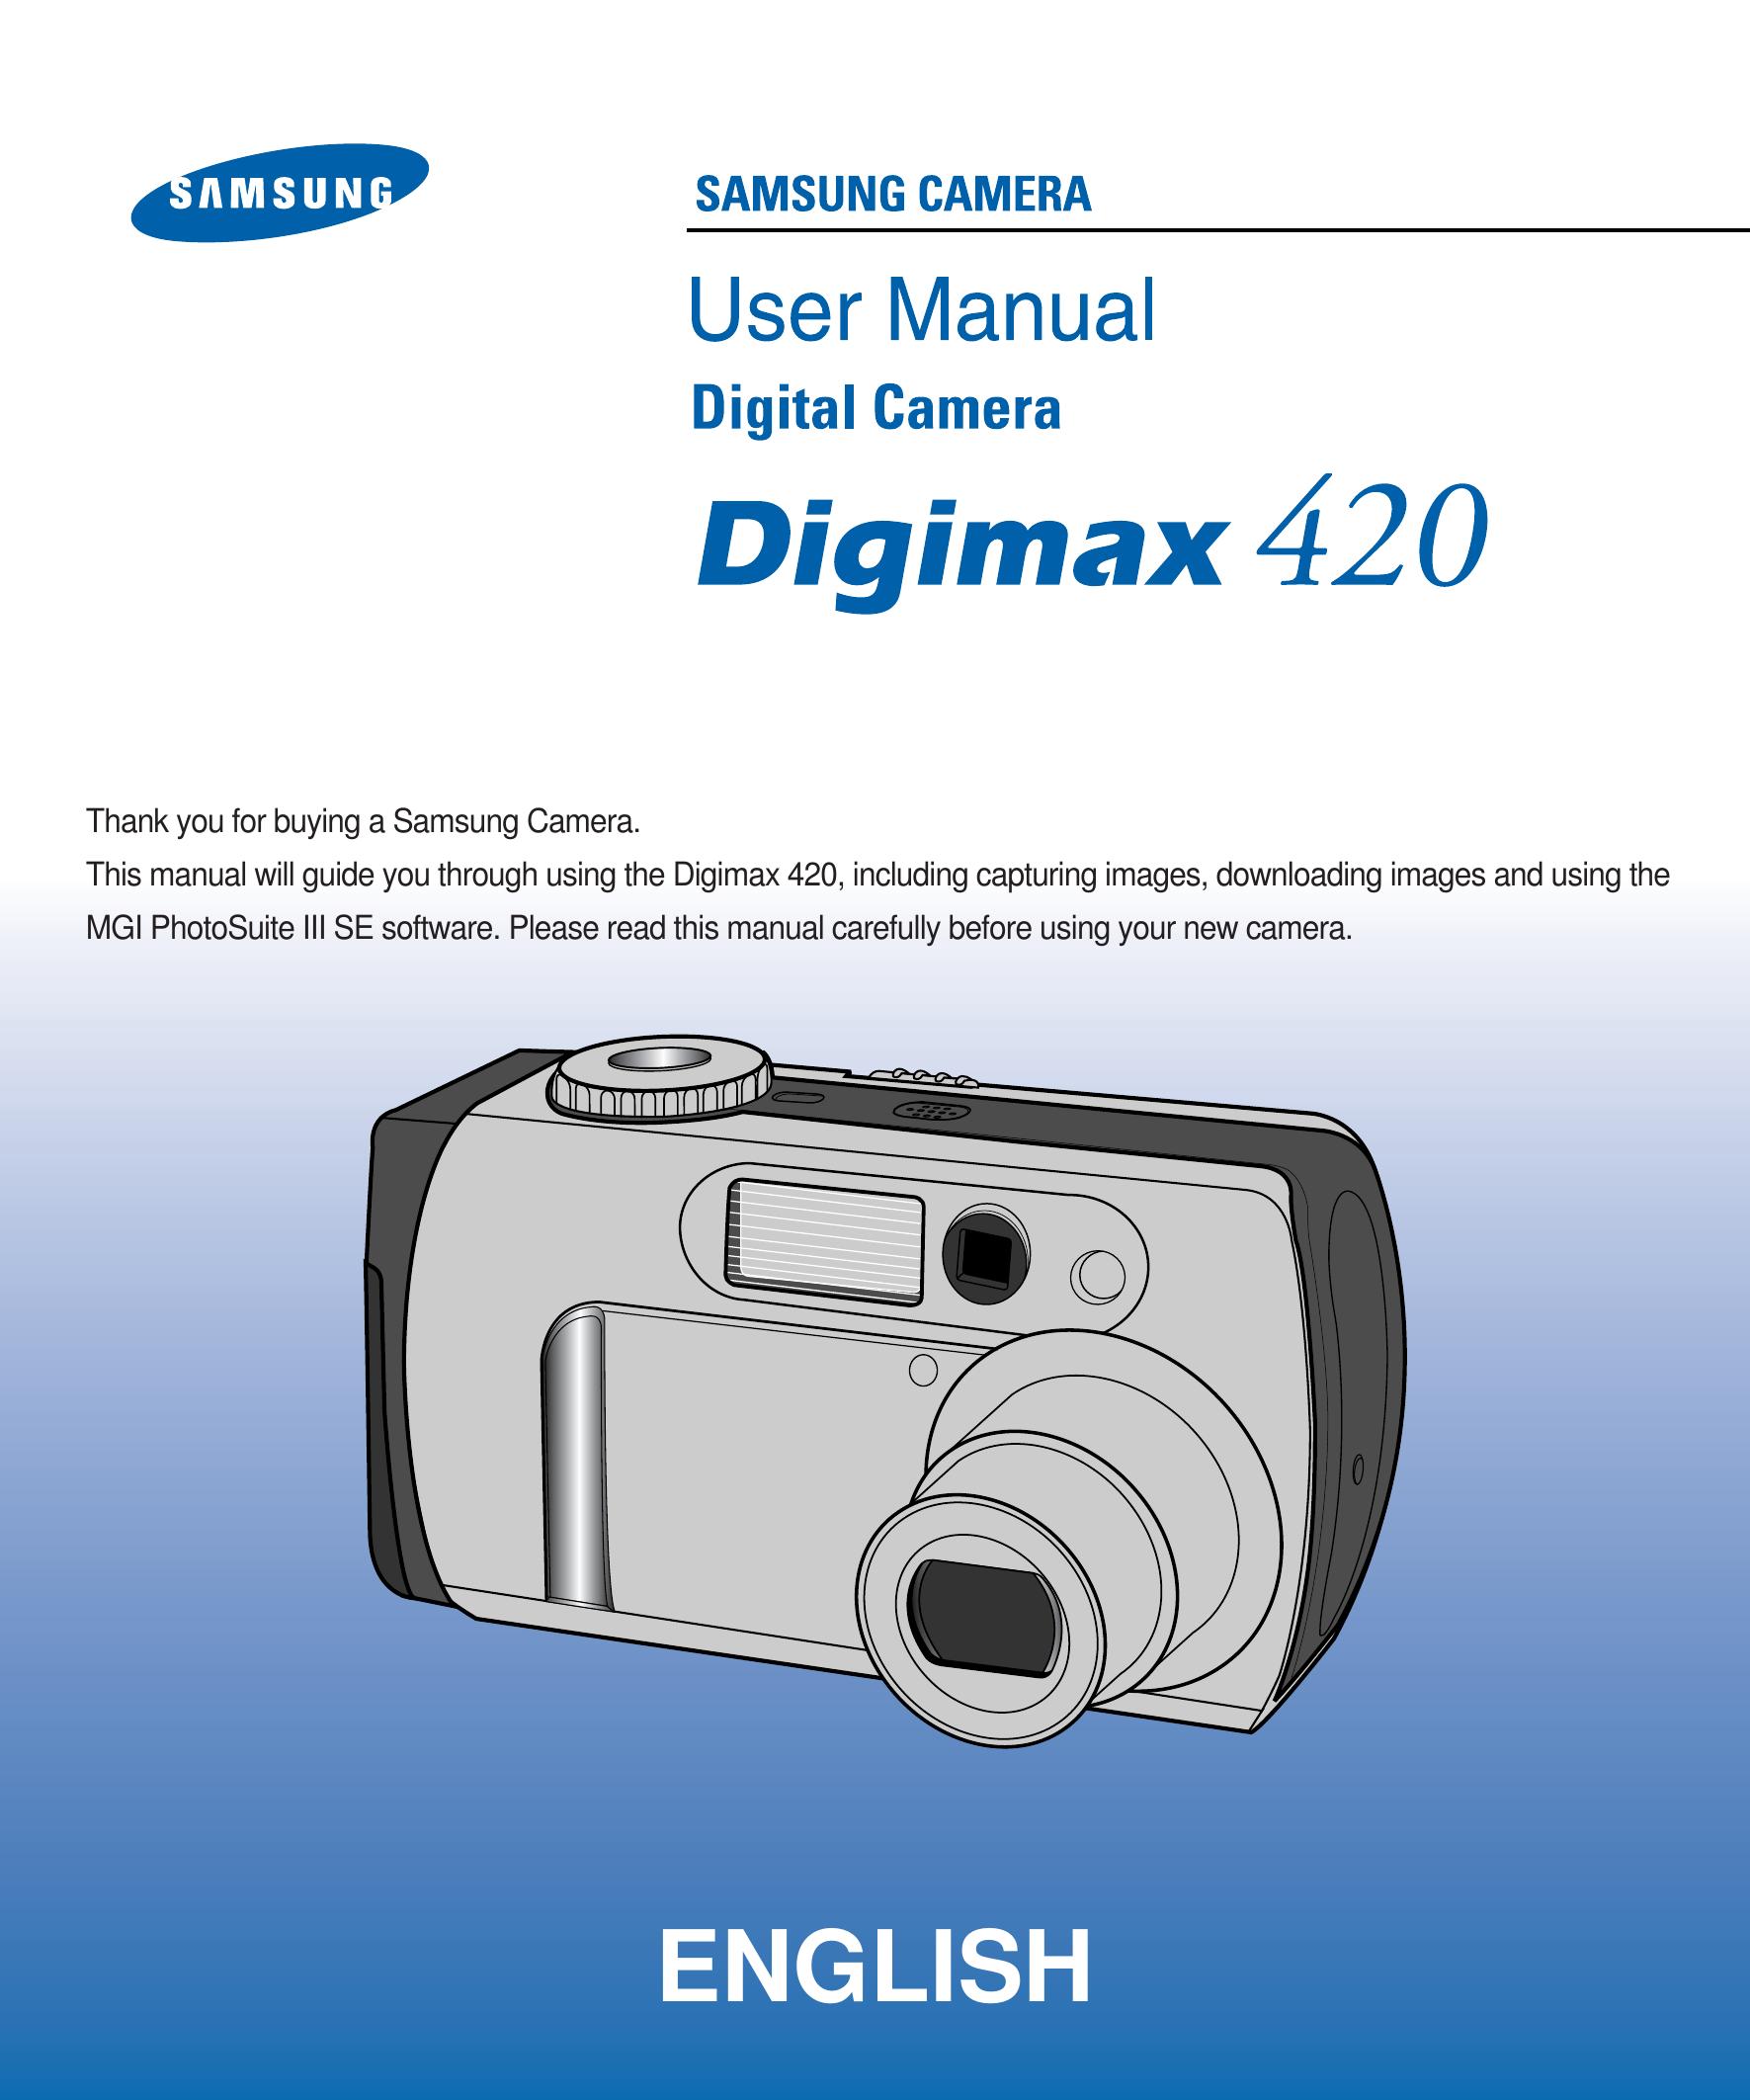 Samsung 420 Digital Camera User Manual